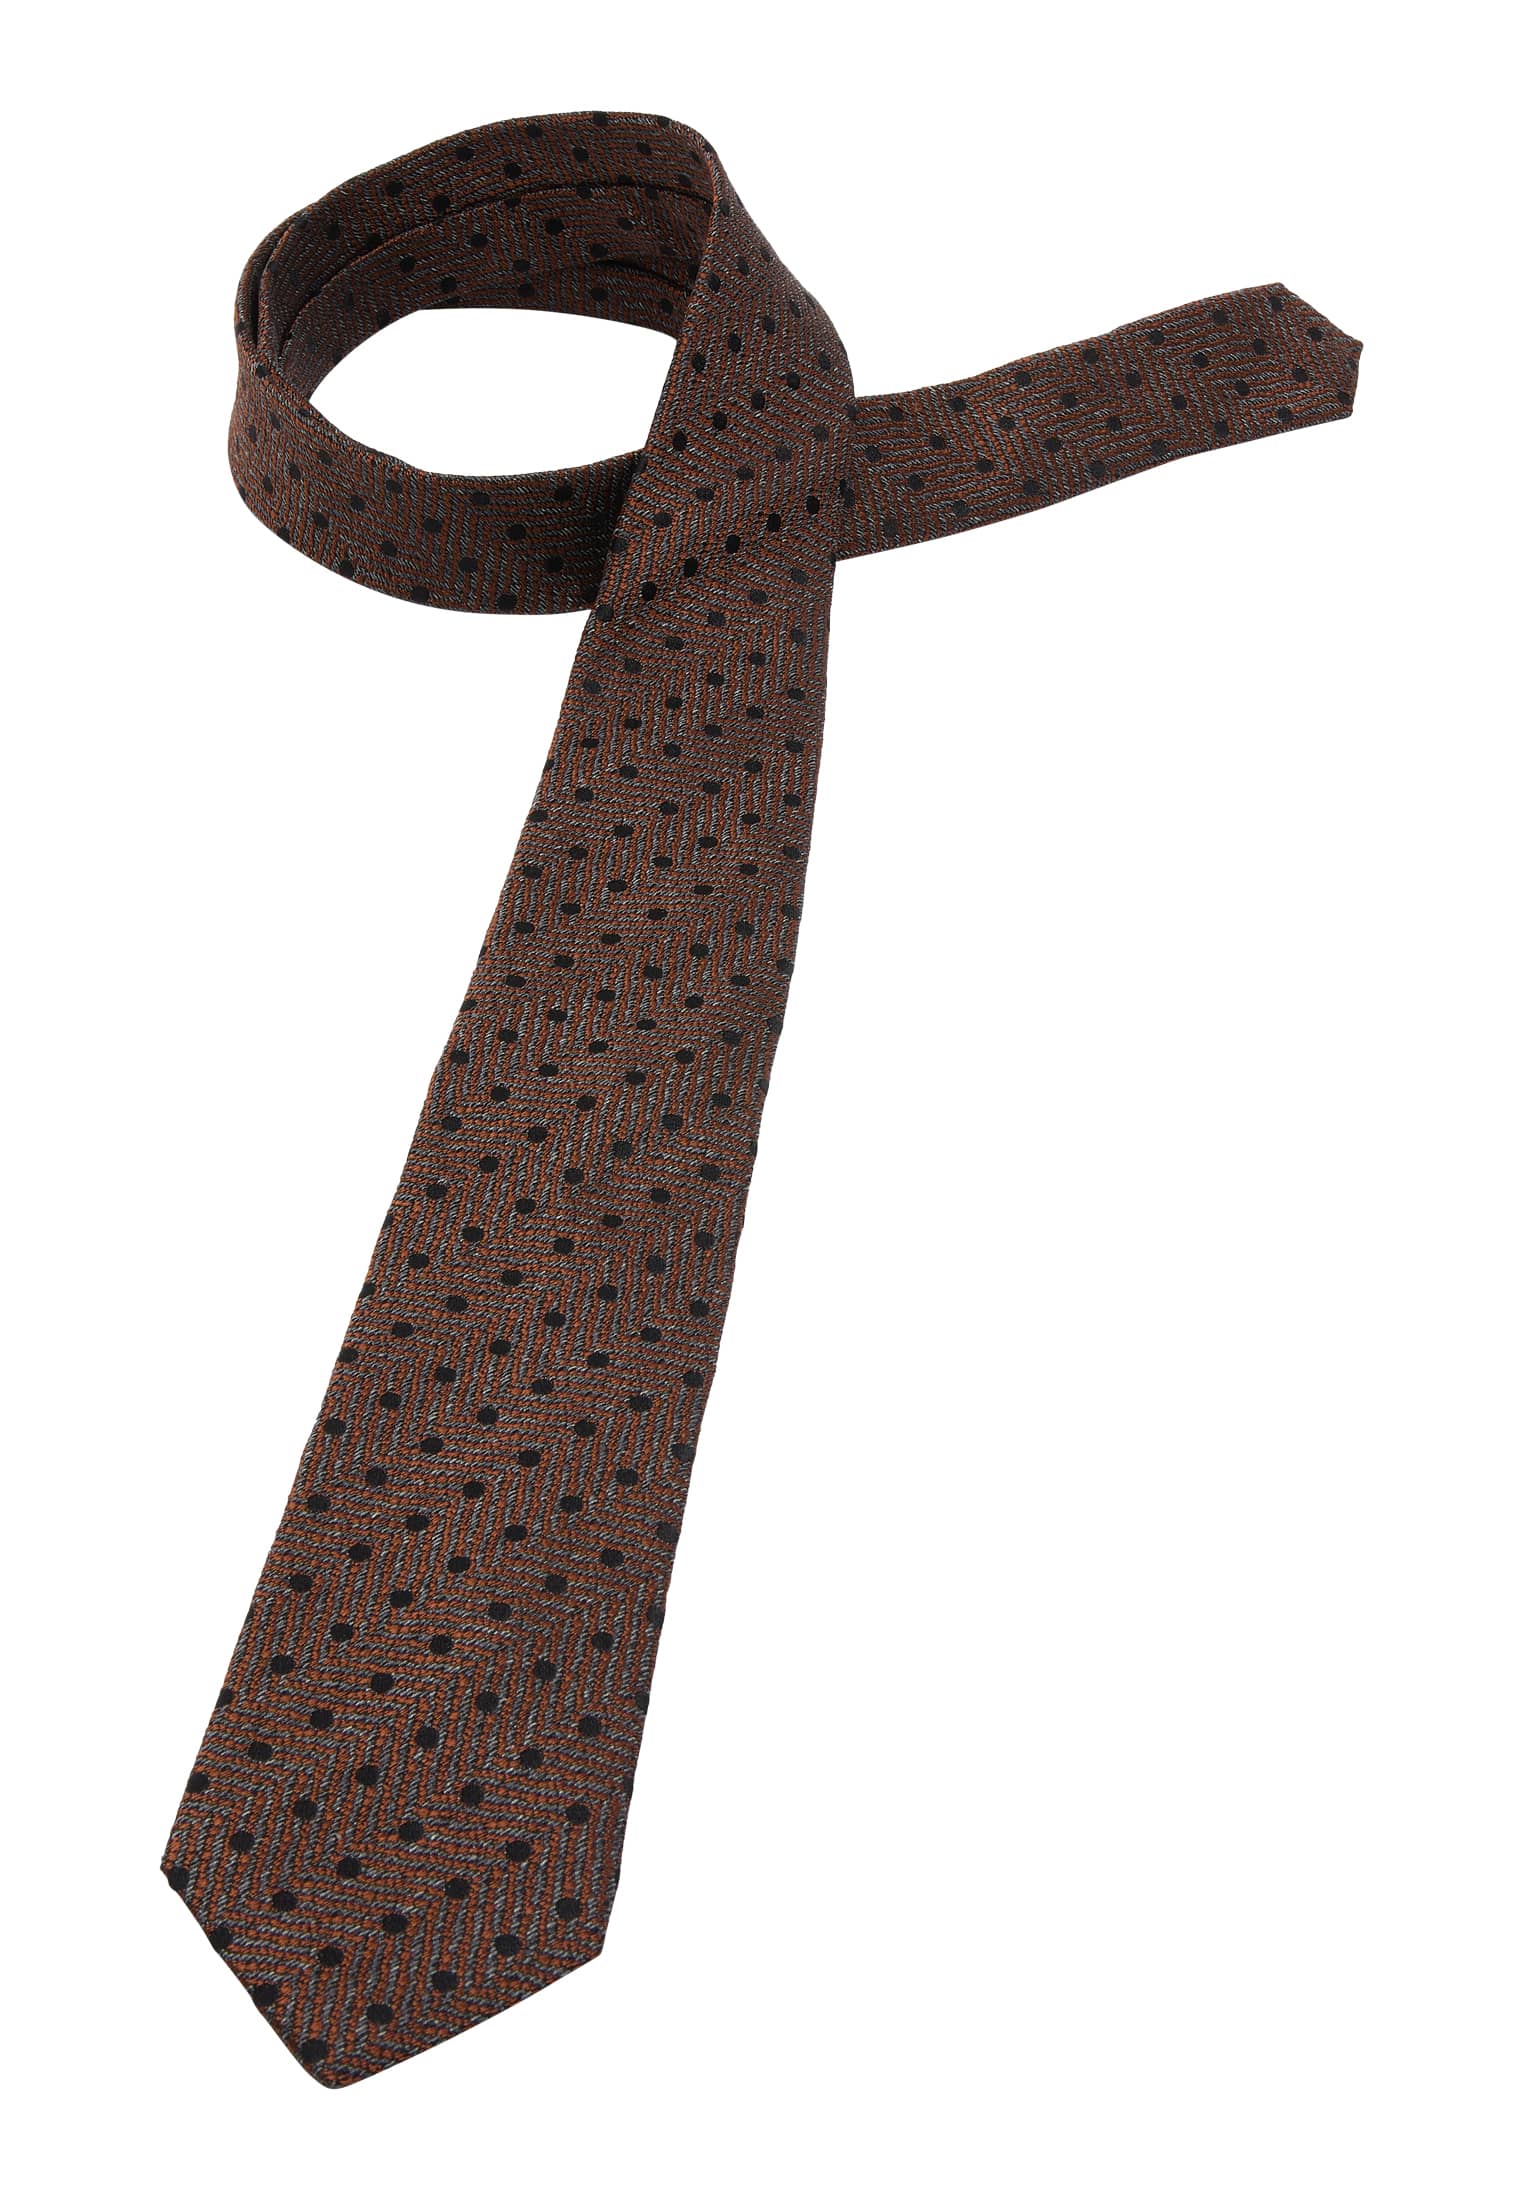 142 | | in | Krawatte braun strukturiert braun 1AC01933-02-91-142